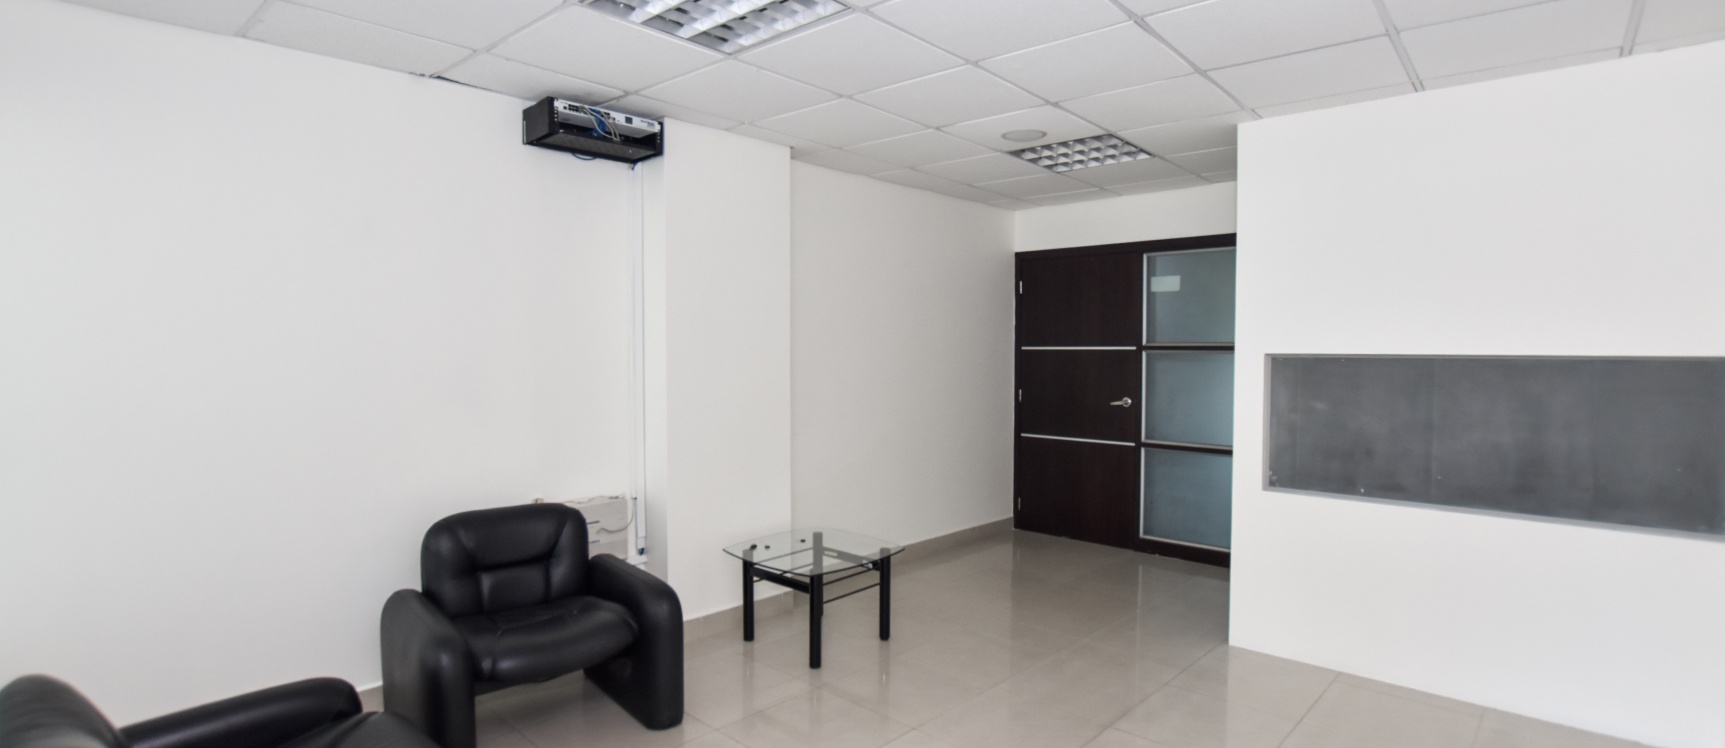 GeoBienes - Oficina en venta ubicada en el Parque Empresarial Colón - Plusvalia Guayaquil Casas de venta y alquiler Inmobiliaria Ecuador